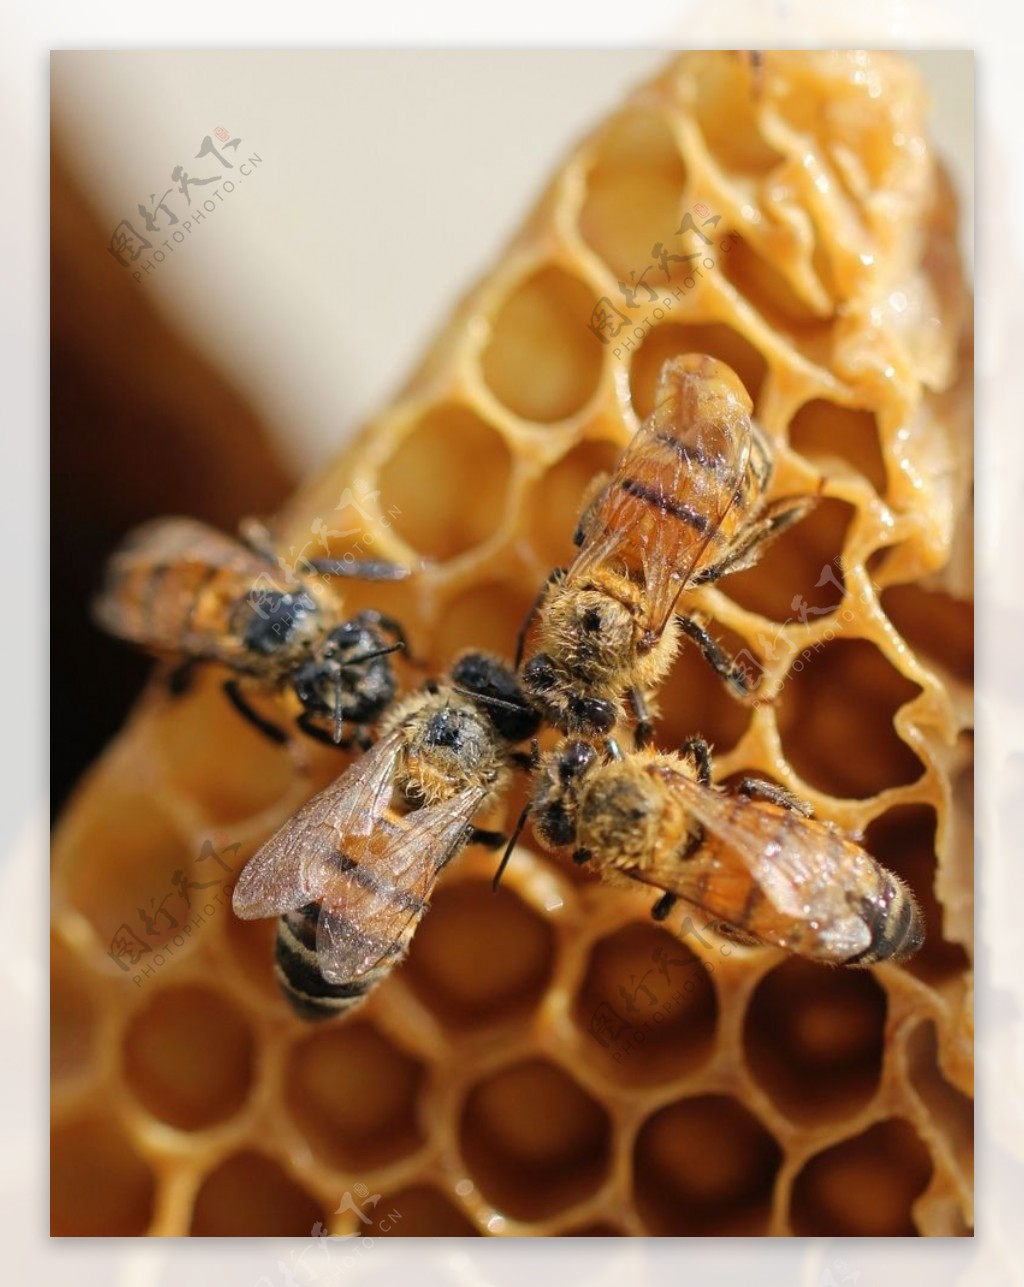 蜜蜂蜂巢